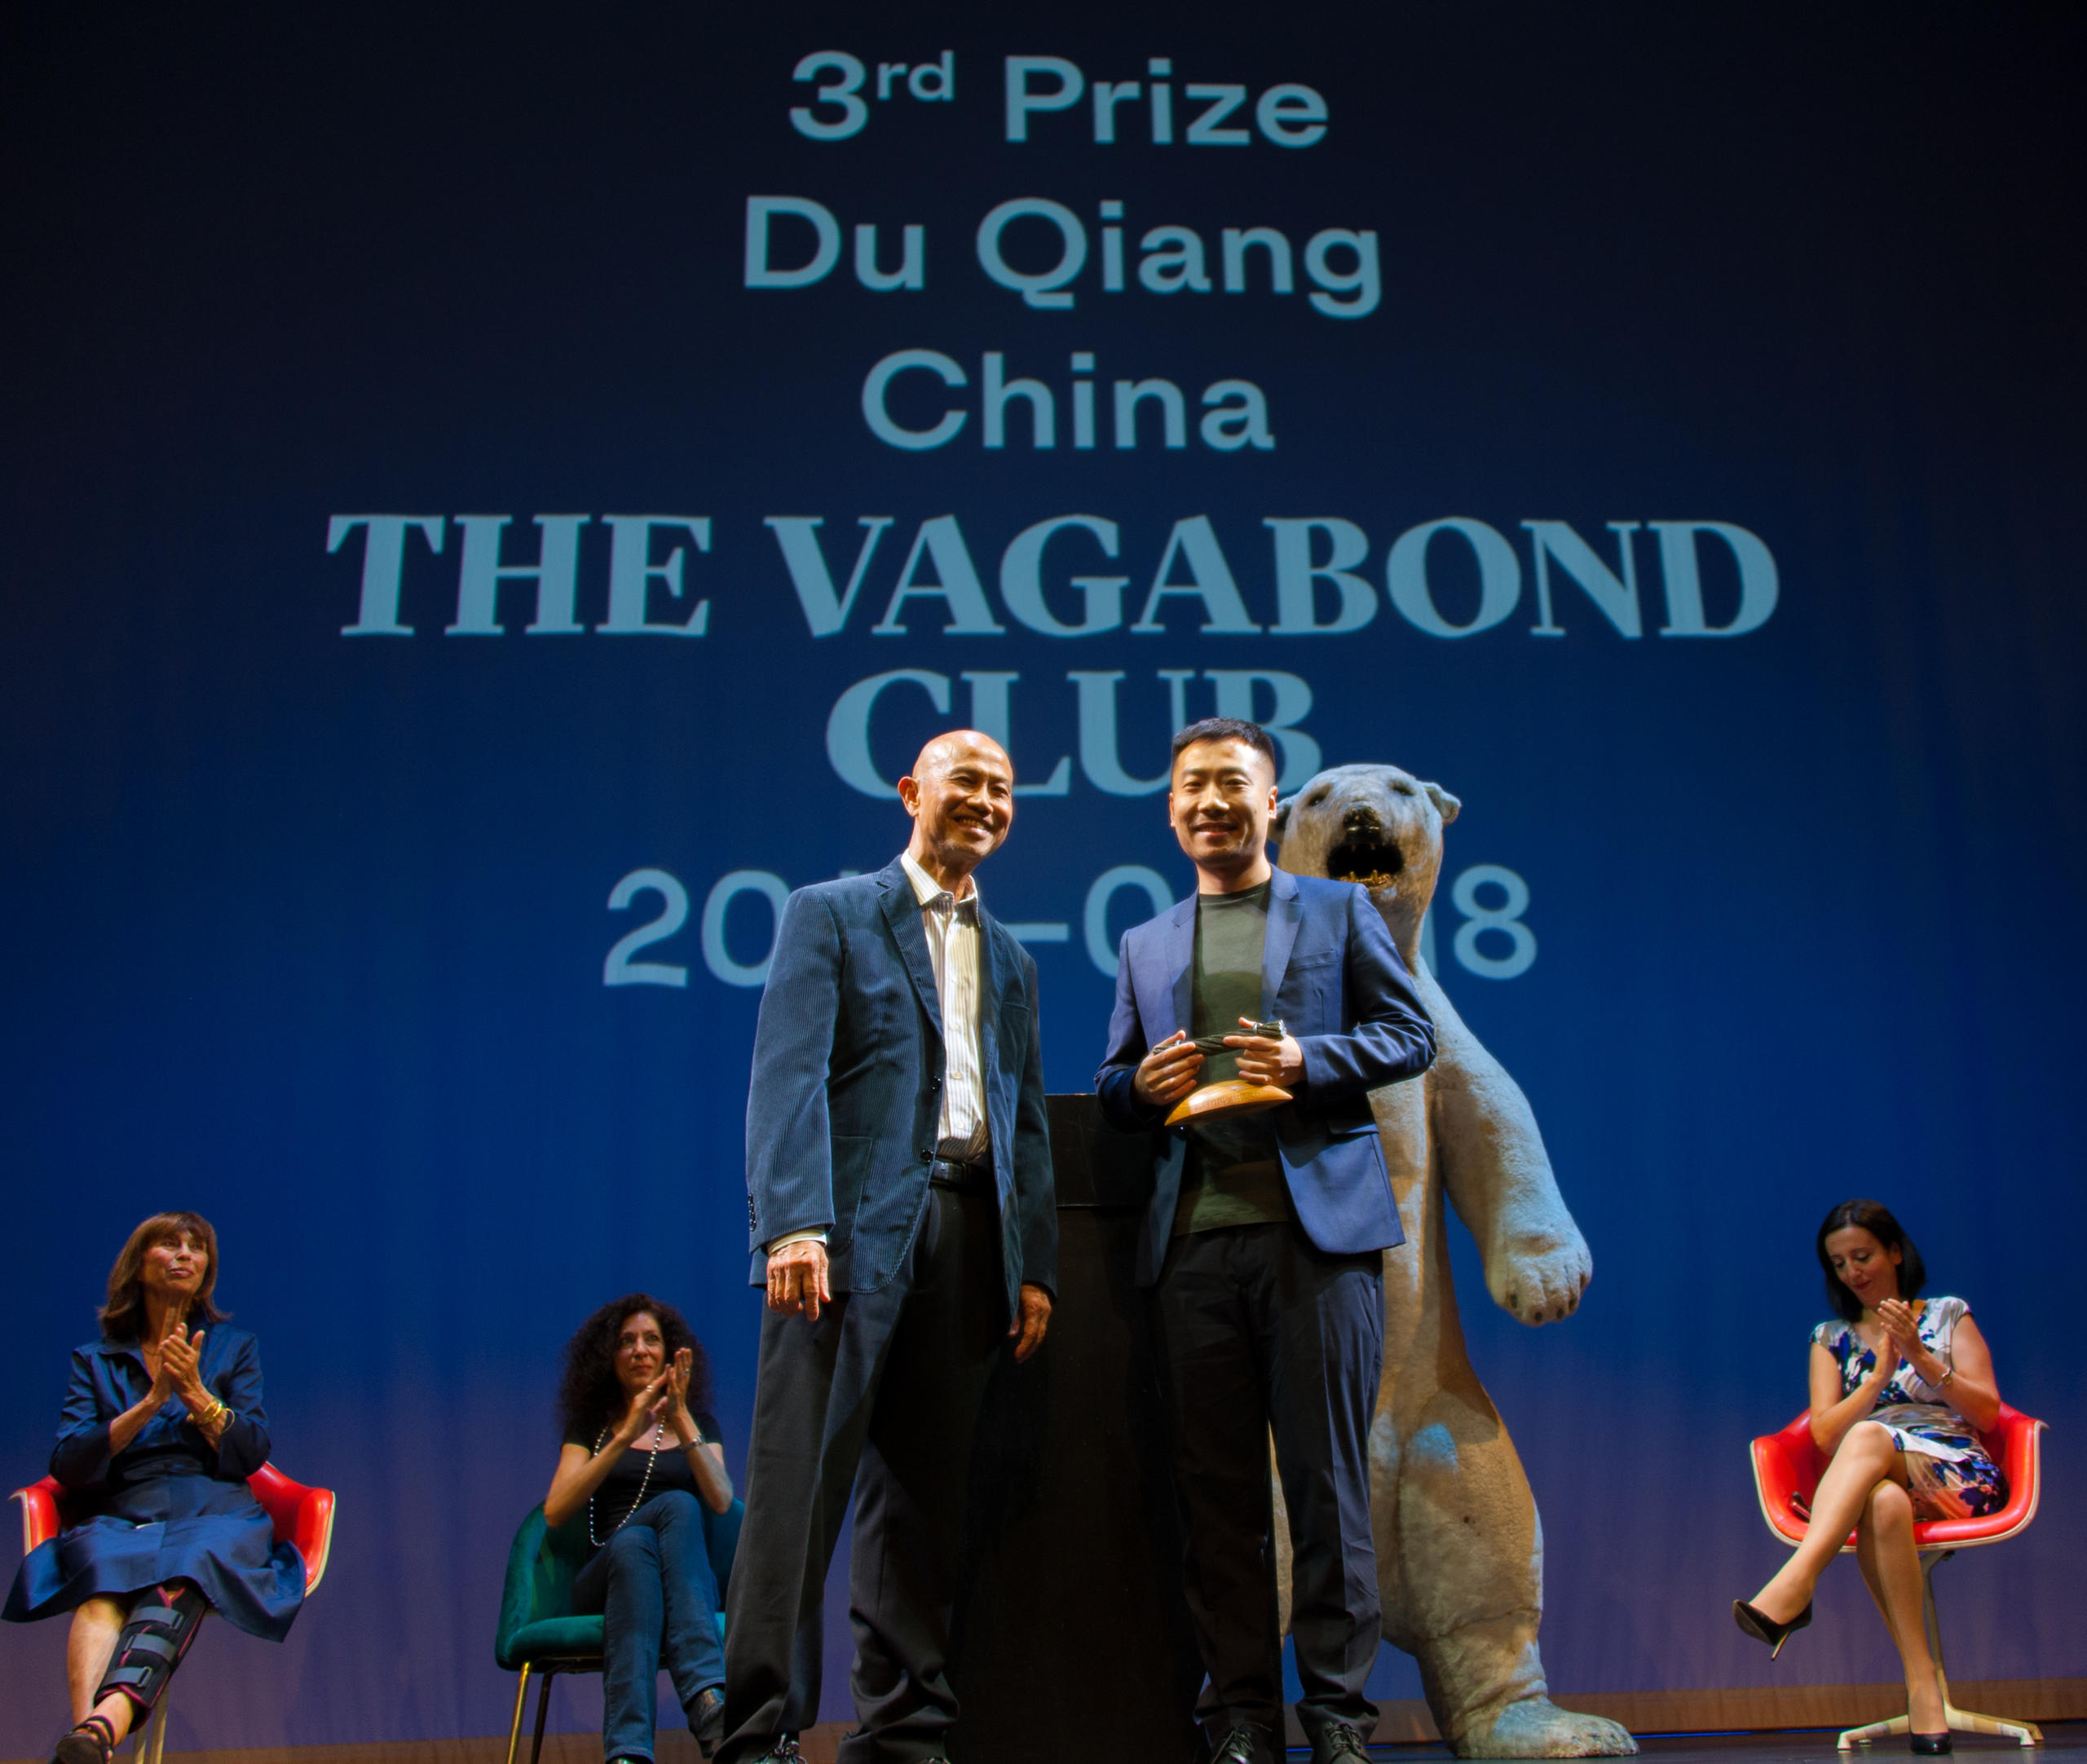 中國記者杜強獲得本屆“真實故事”三等獎 (10 000瑞士法郎)。